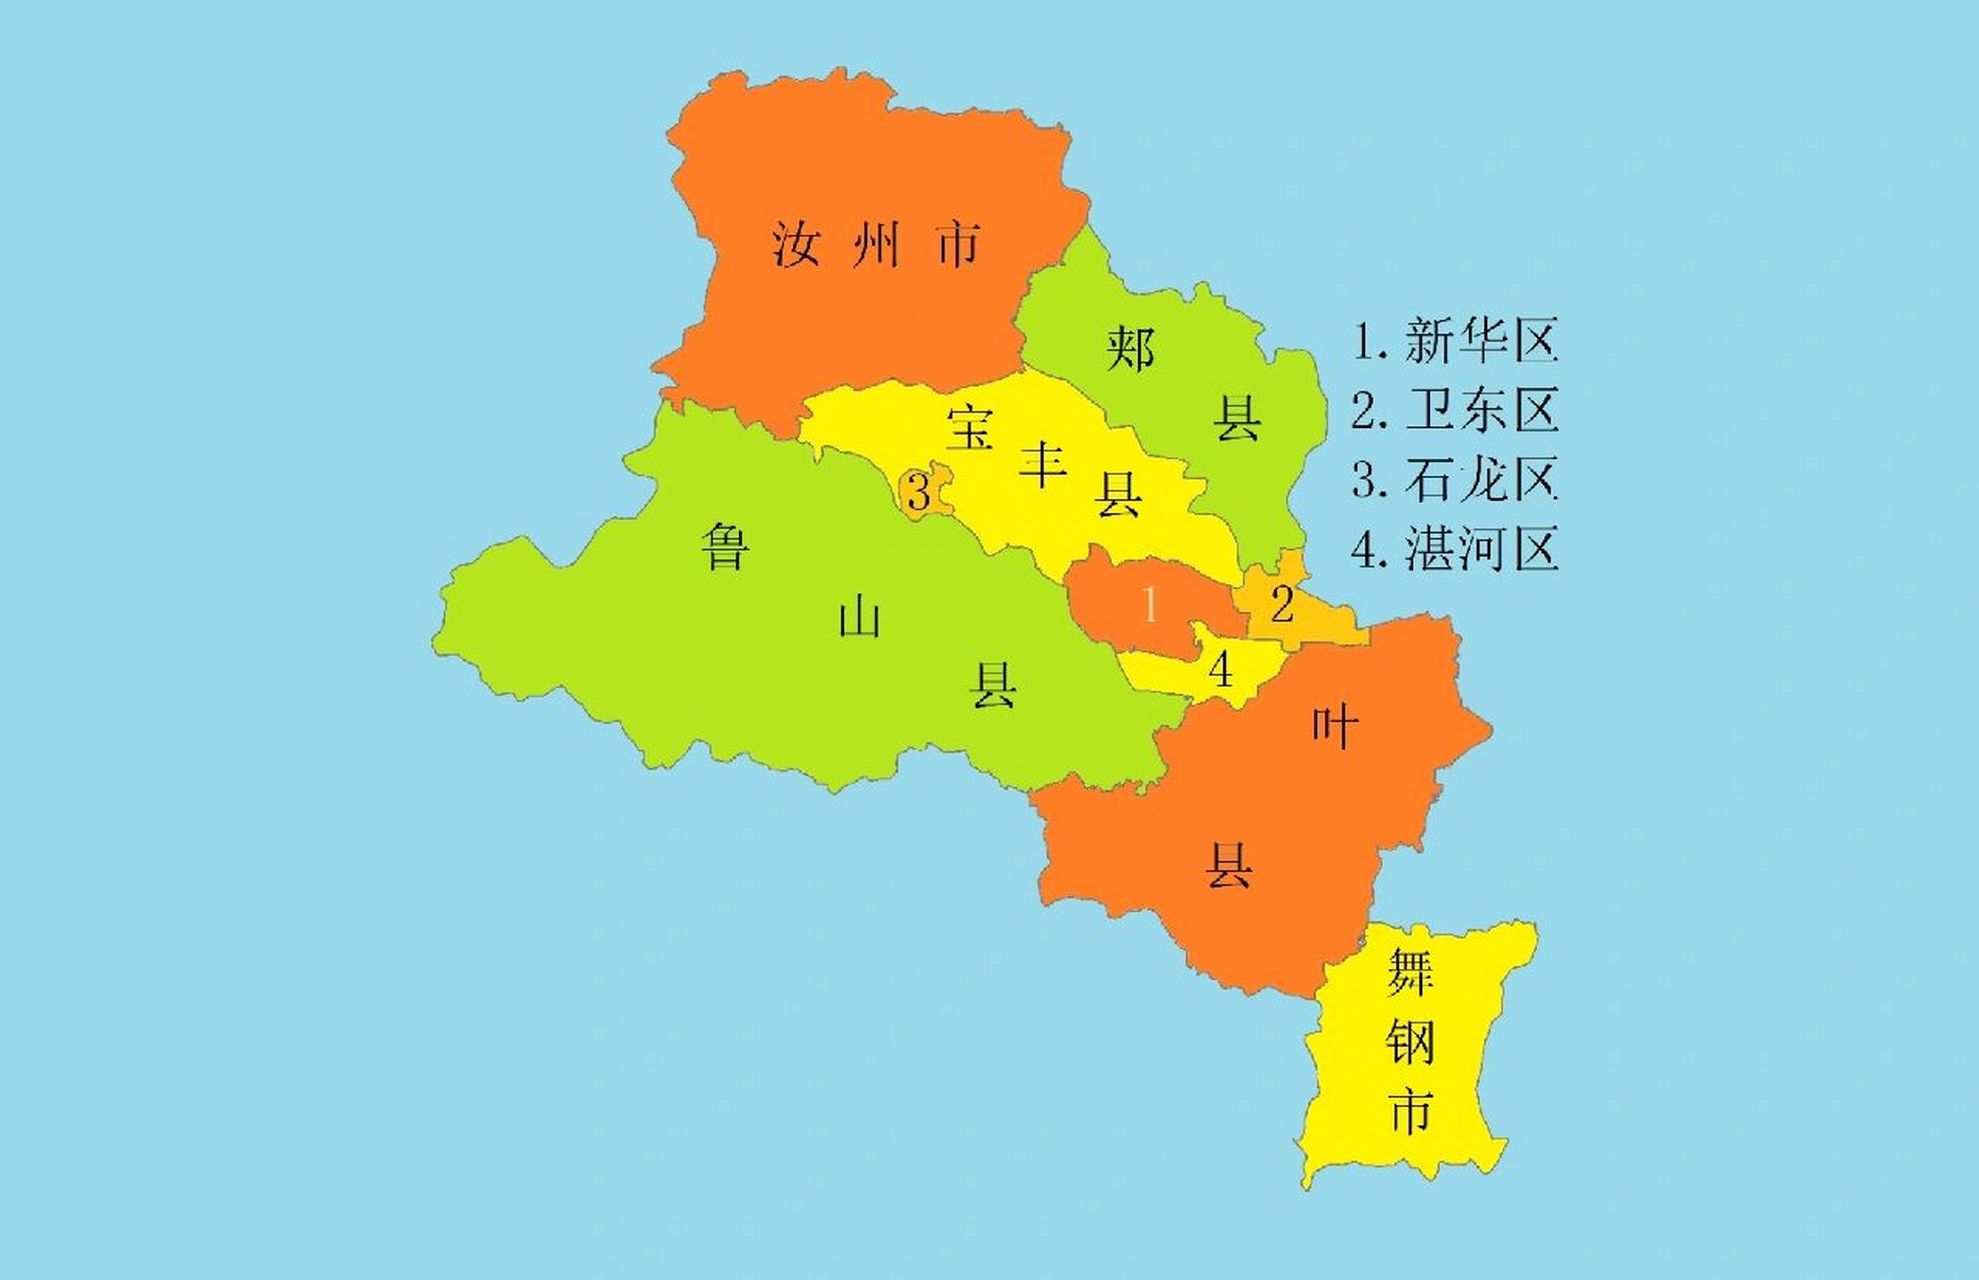 河南行政区划地图 平顶山,别称鹰城,下辖4区4县2市:新华区,卫东区